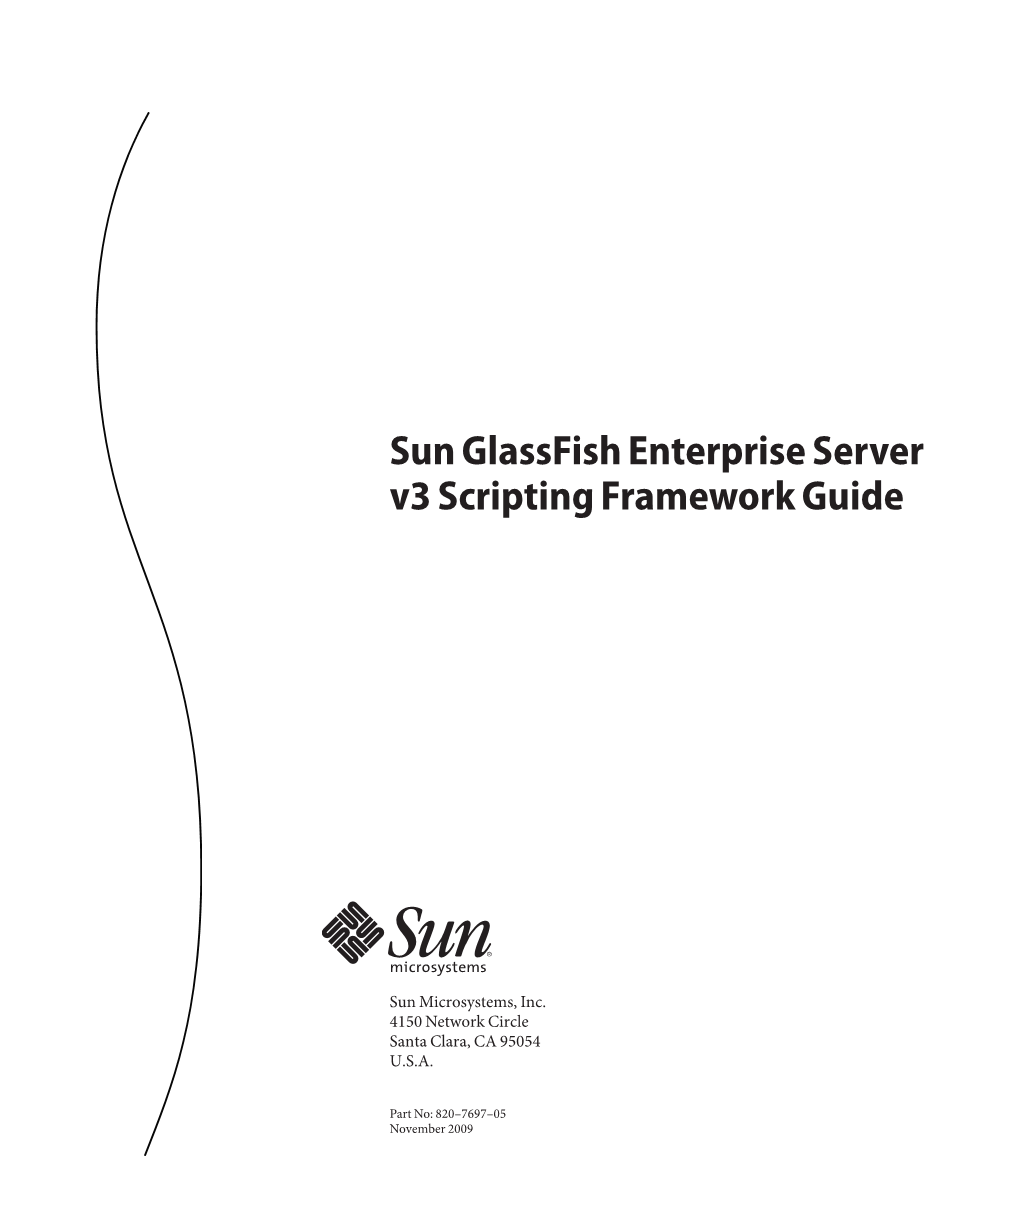 Sun Glassfish Enterprise Server V3 Scripting Framework Guide